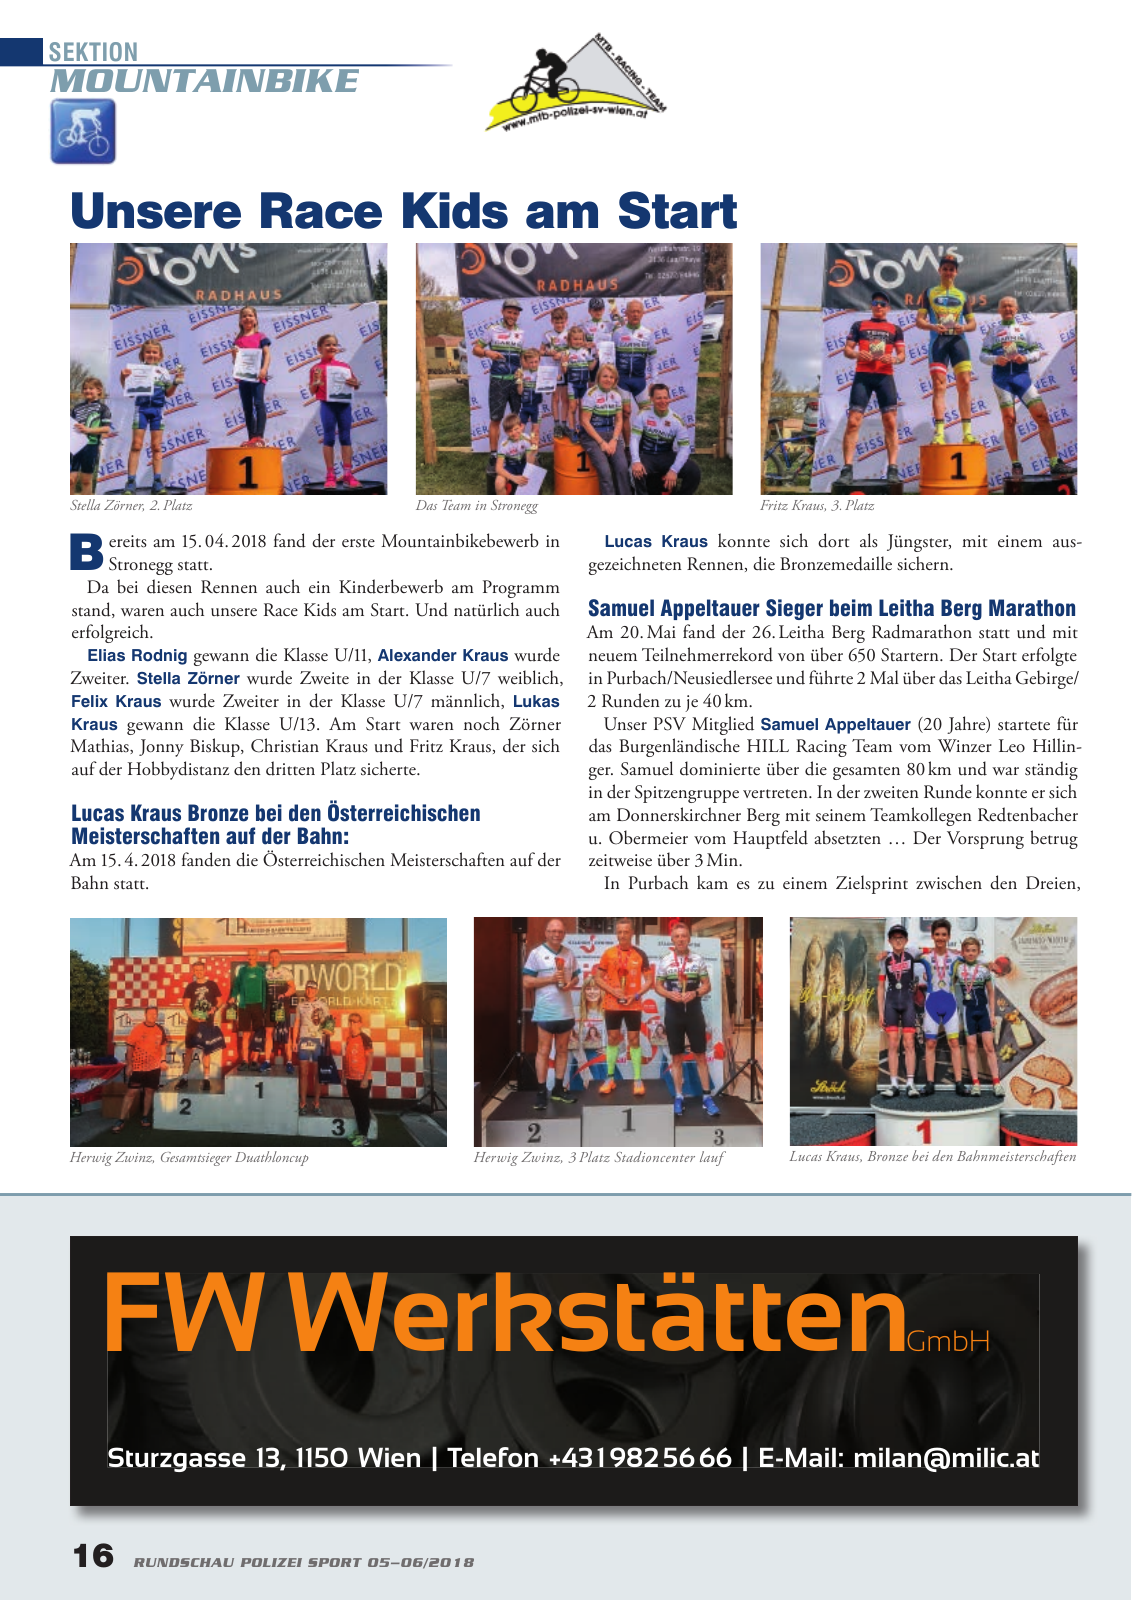 Vorschau Rundschau Polizei Sport 05-06/2018 Seite 16